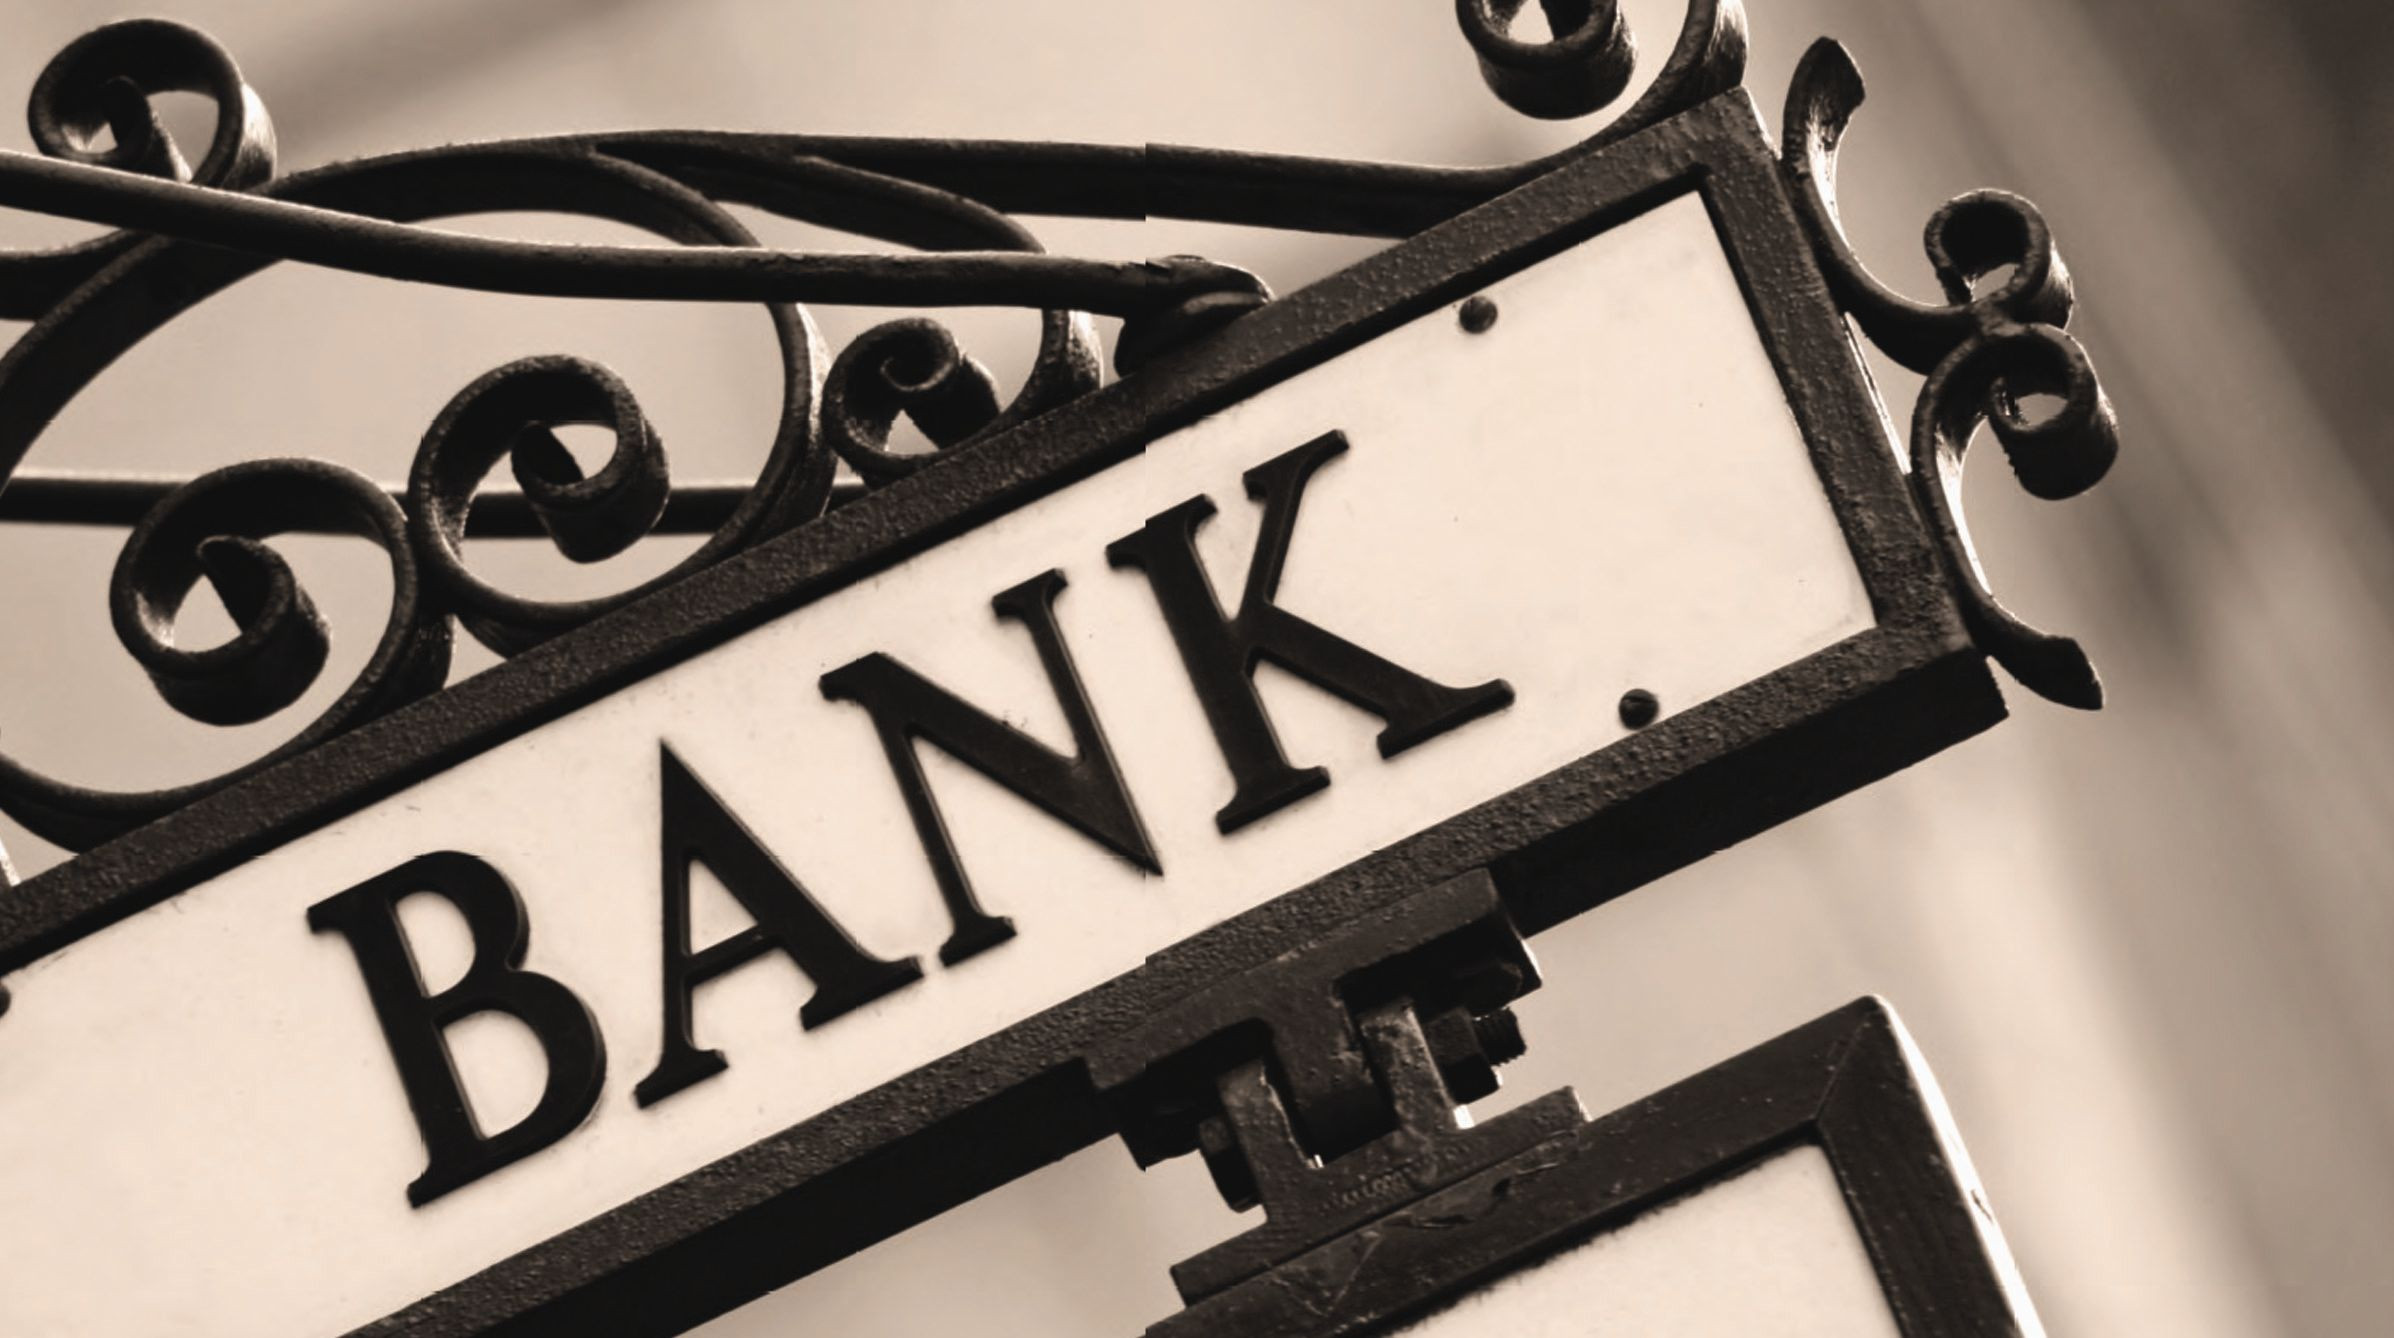 Πότε θα σκάσει η παγκόσμια φούσκα των κεντρικών τραπεζών;